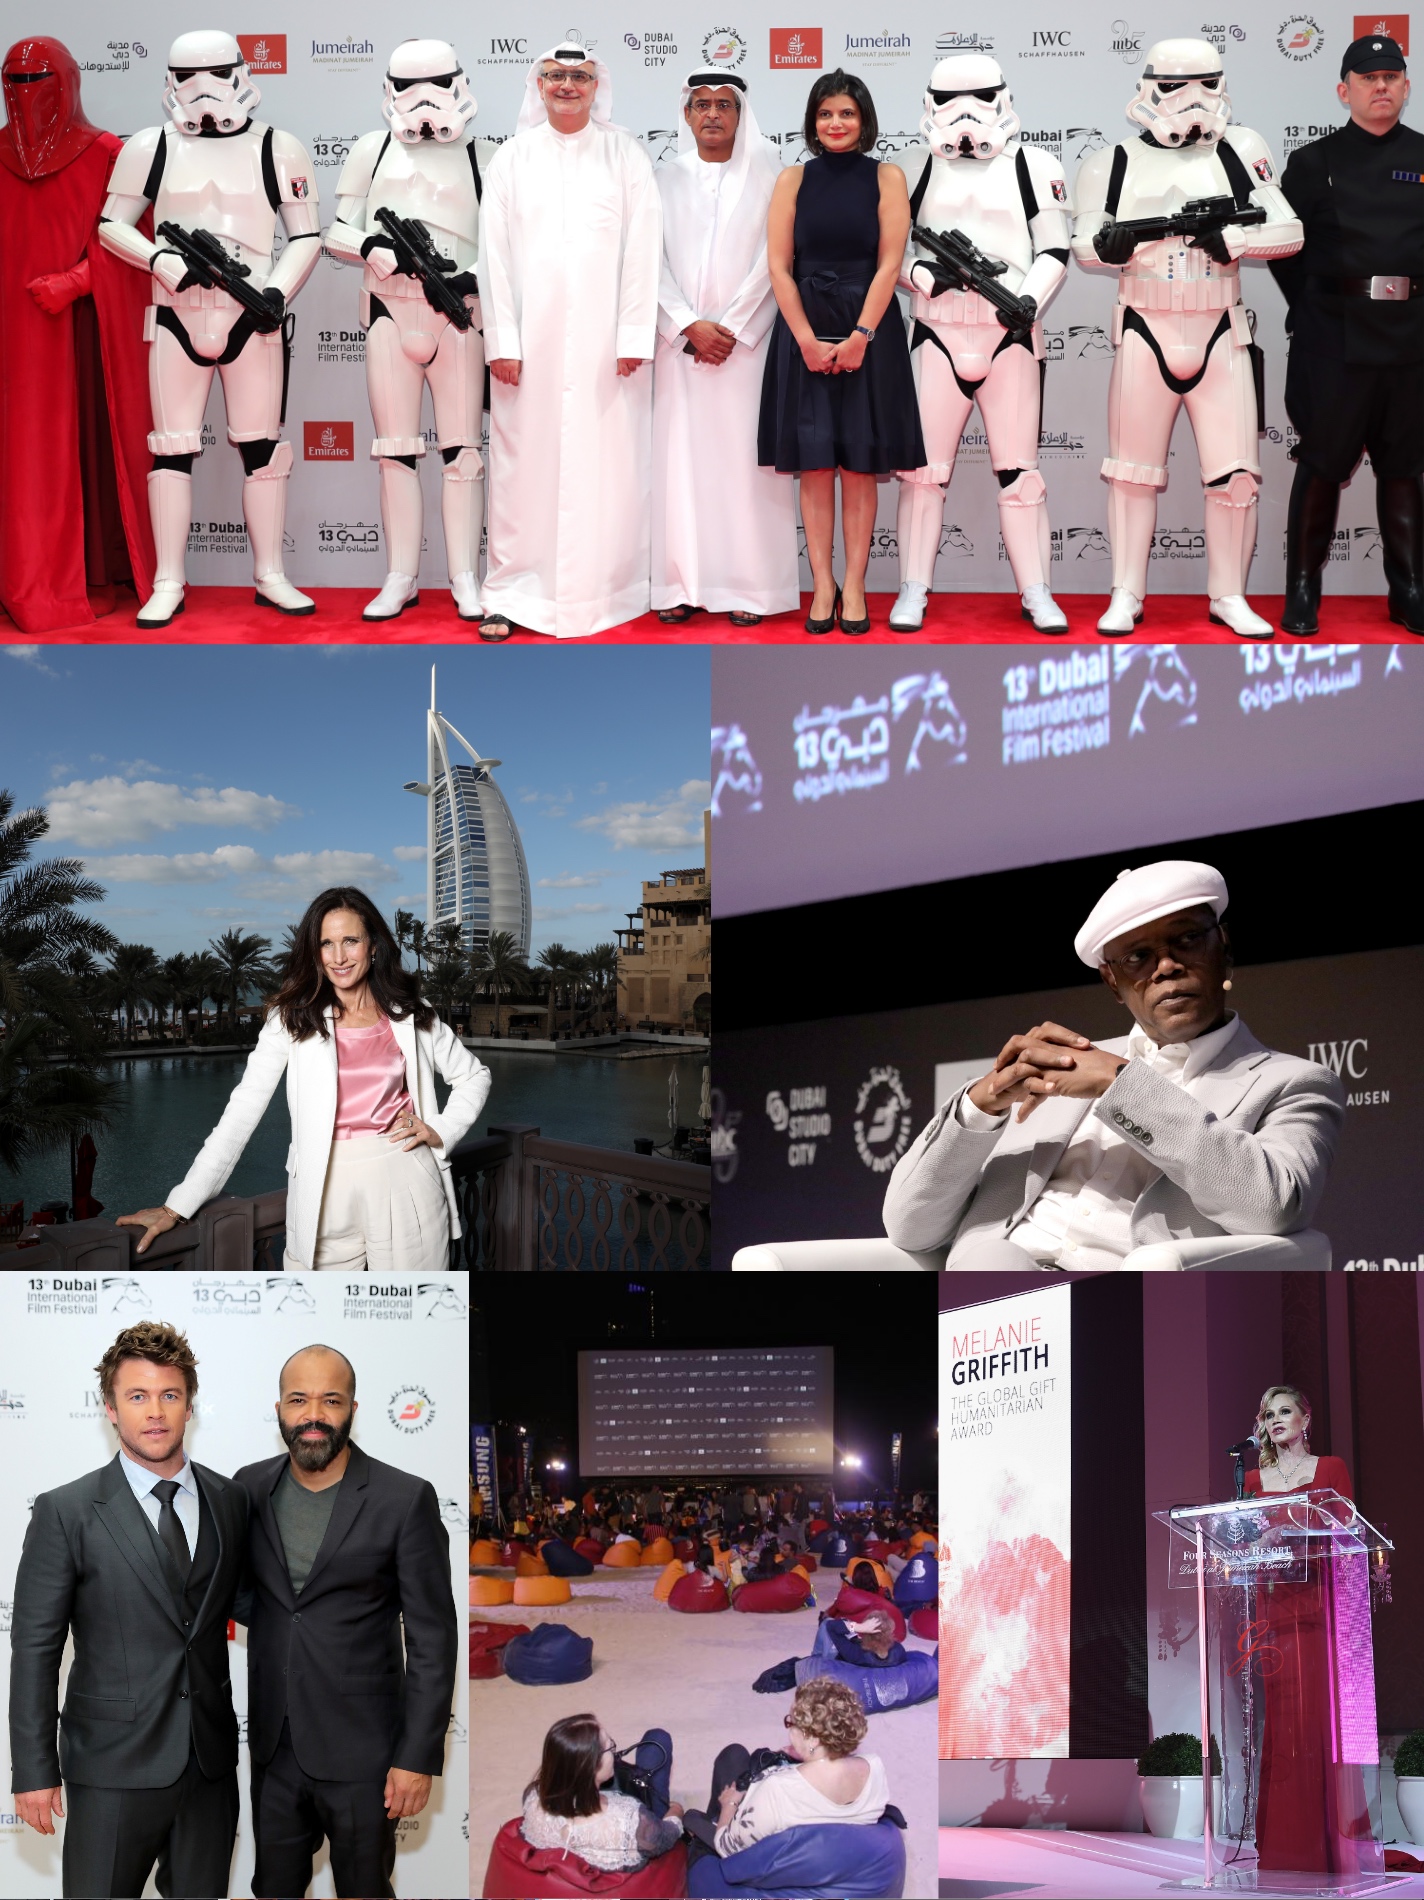 Scenes from the 2016 Dubai Film Festival